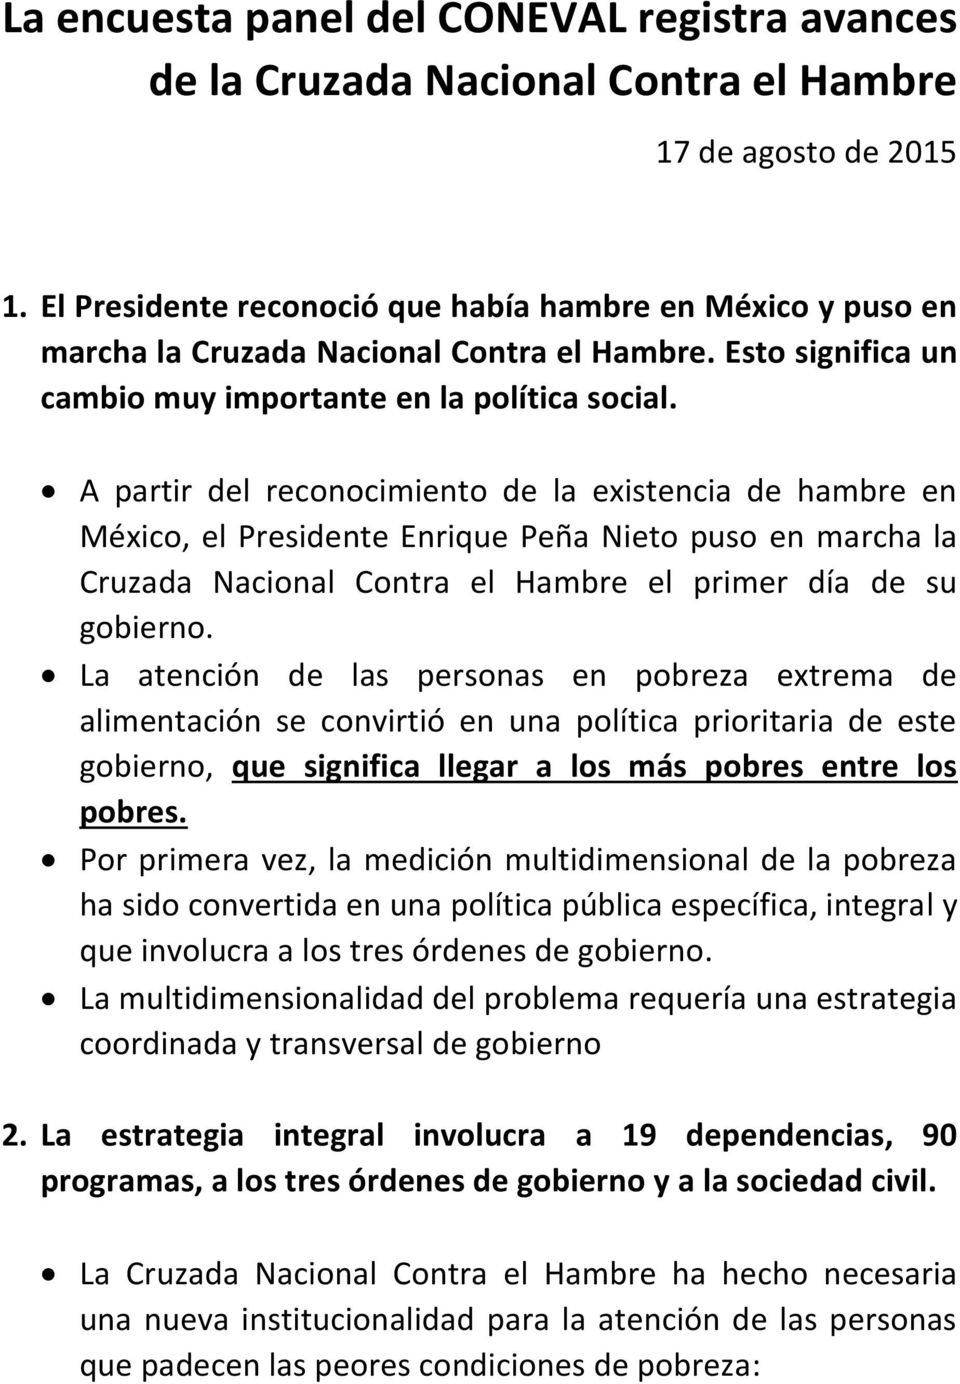 A partir del reconocimiento de la existencia de hambre en México, el Presidente Enrique Peña Nieto puso en marcha la Cruzada Nacional Contra el Hambre el primer día de su gobierno.